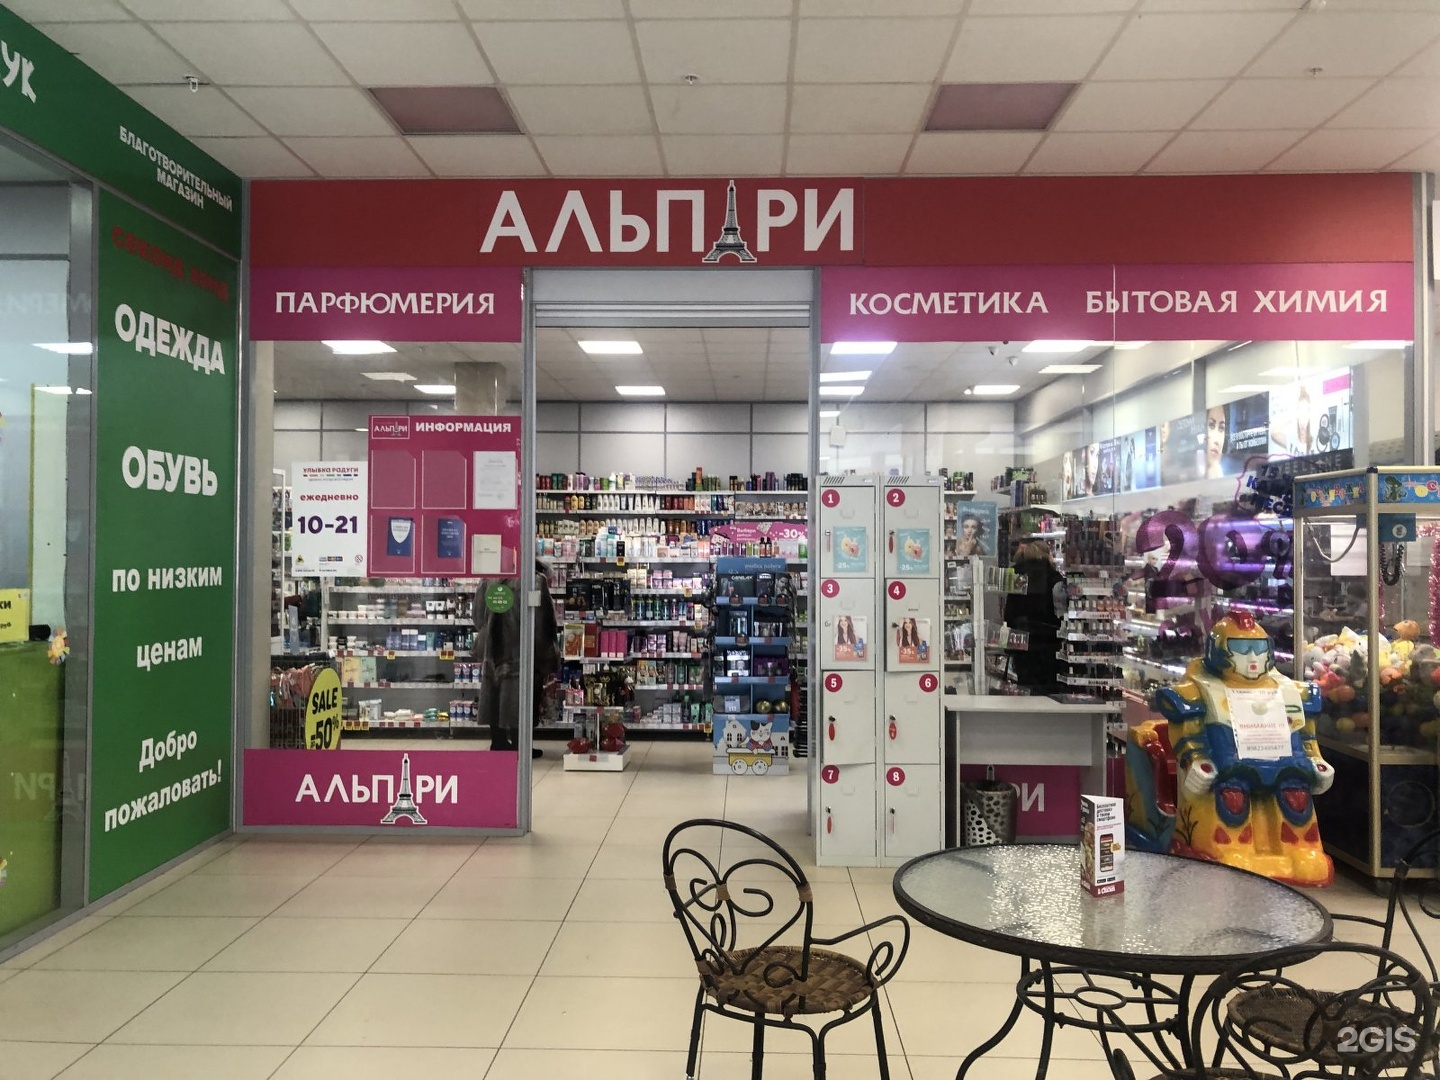 Улыбка Радуги Интернет Магазин Пермь